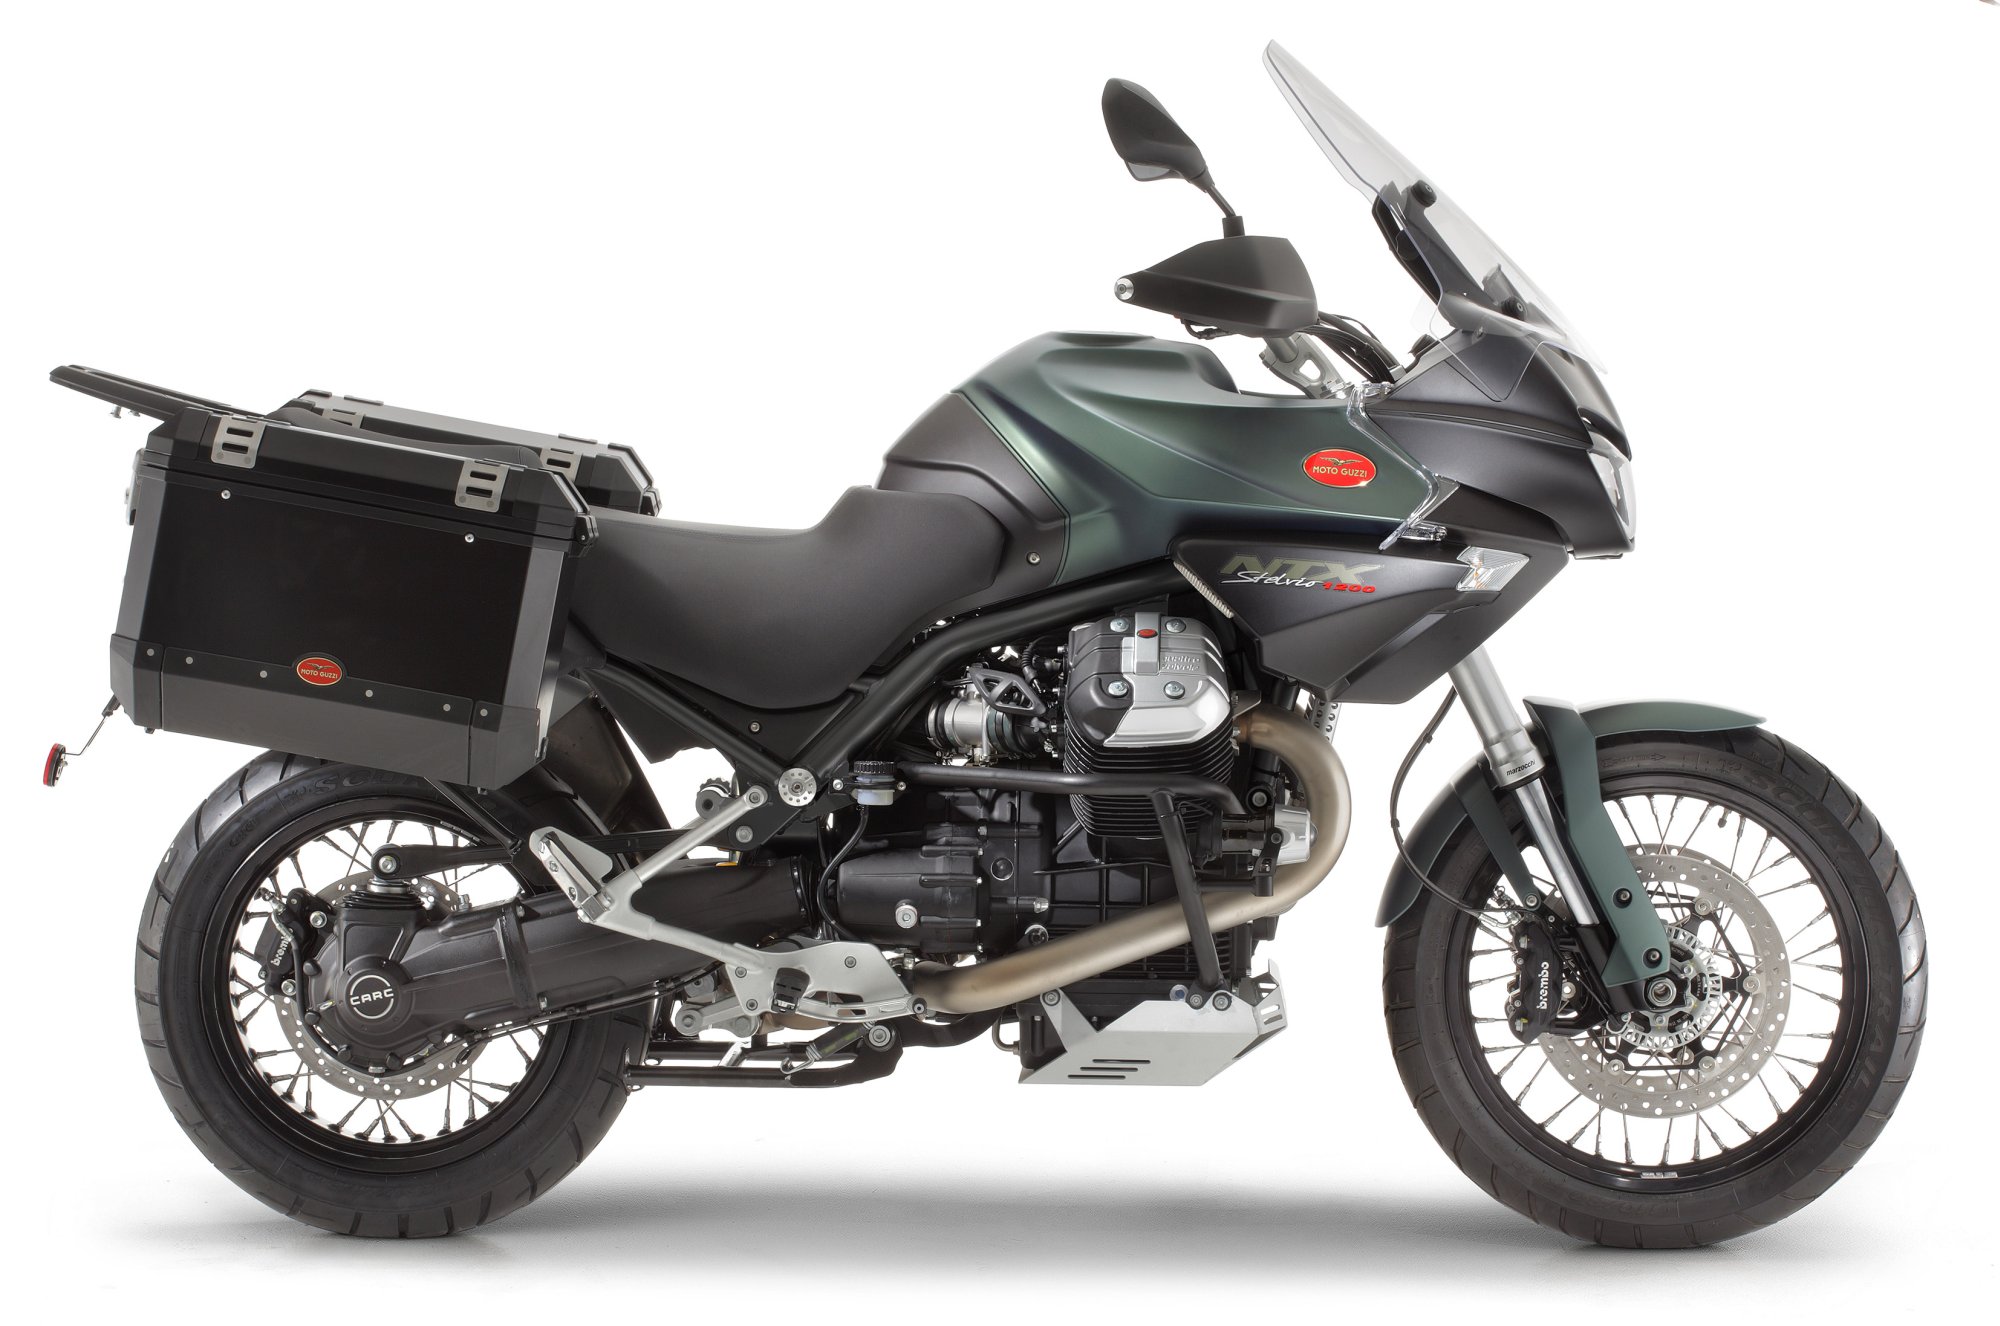 Motorrad Vergleich Moto Guzzi Stelvio 1200 8V NTX 2015 vs. Moto Guzzi  Stelvio 1200 8V NTX 2014